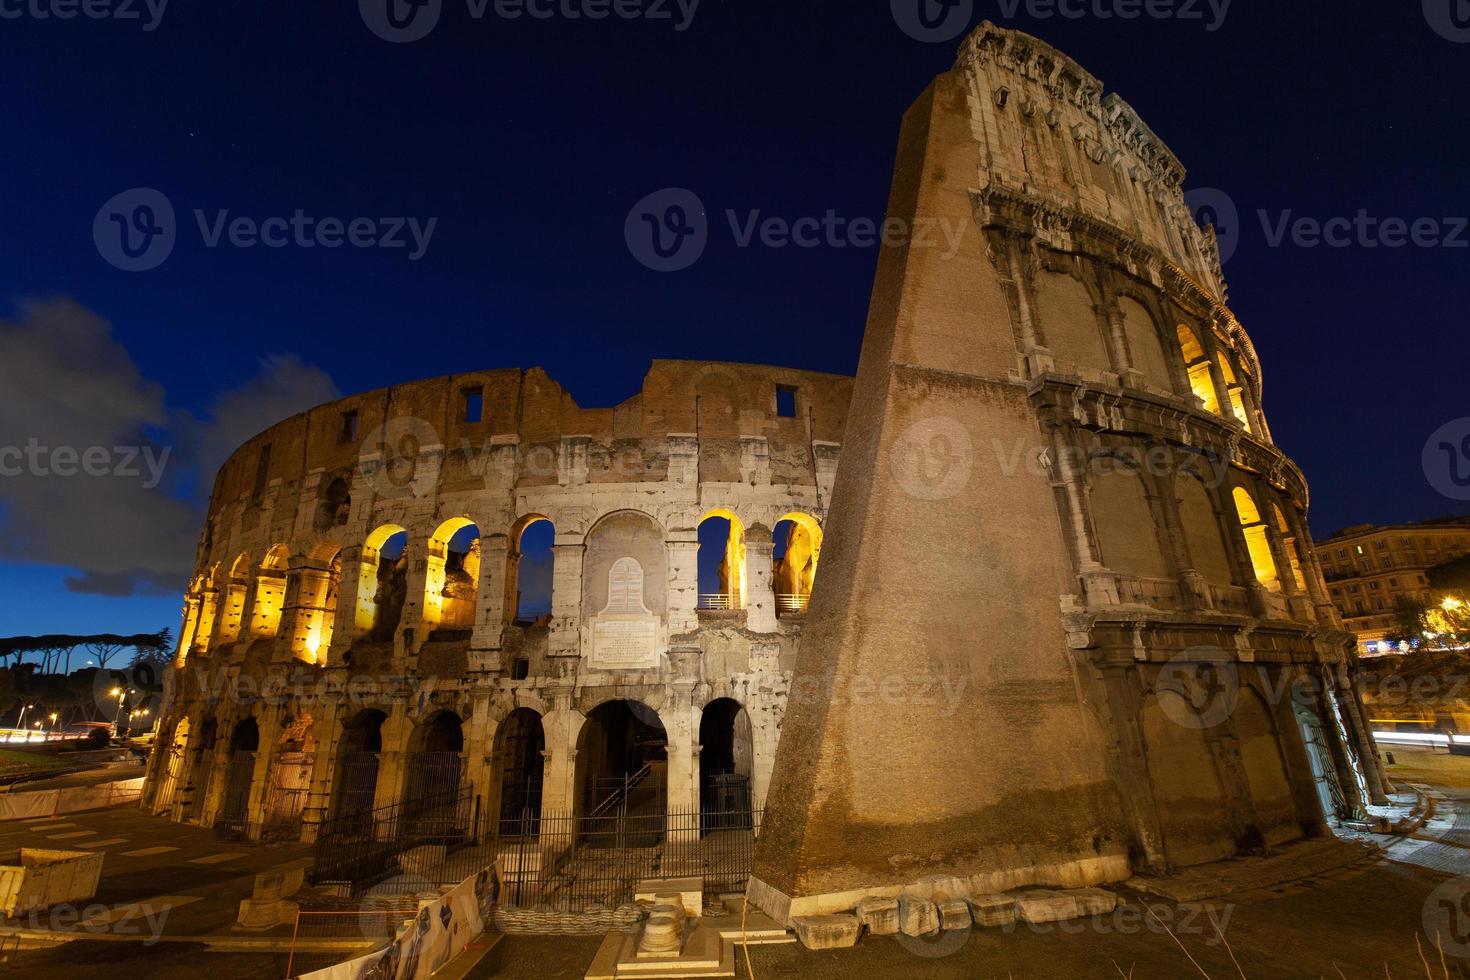 rom, italien, kolosseum altes antikes gebäude gladiatorenkampf bei nacht. foto